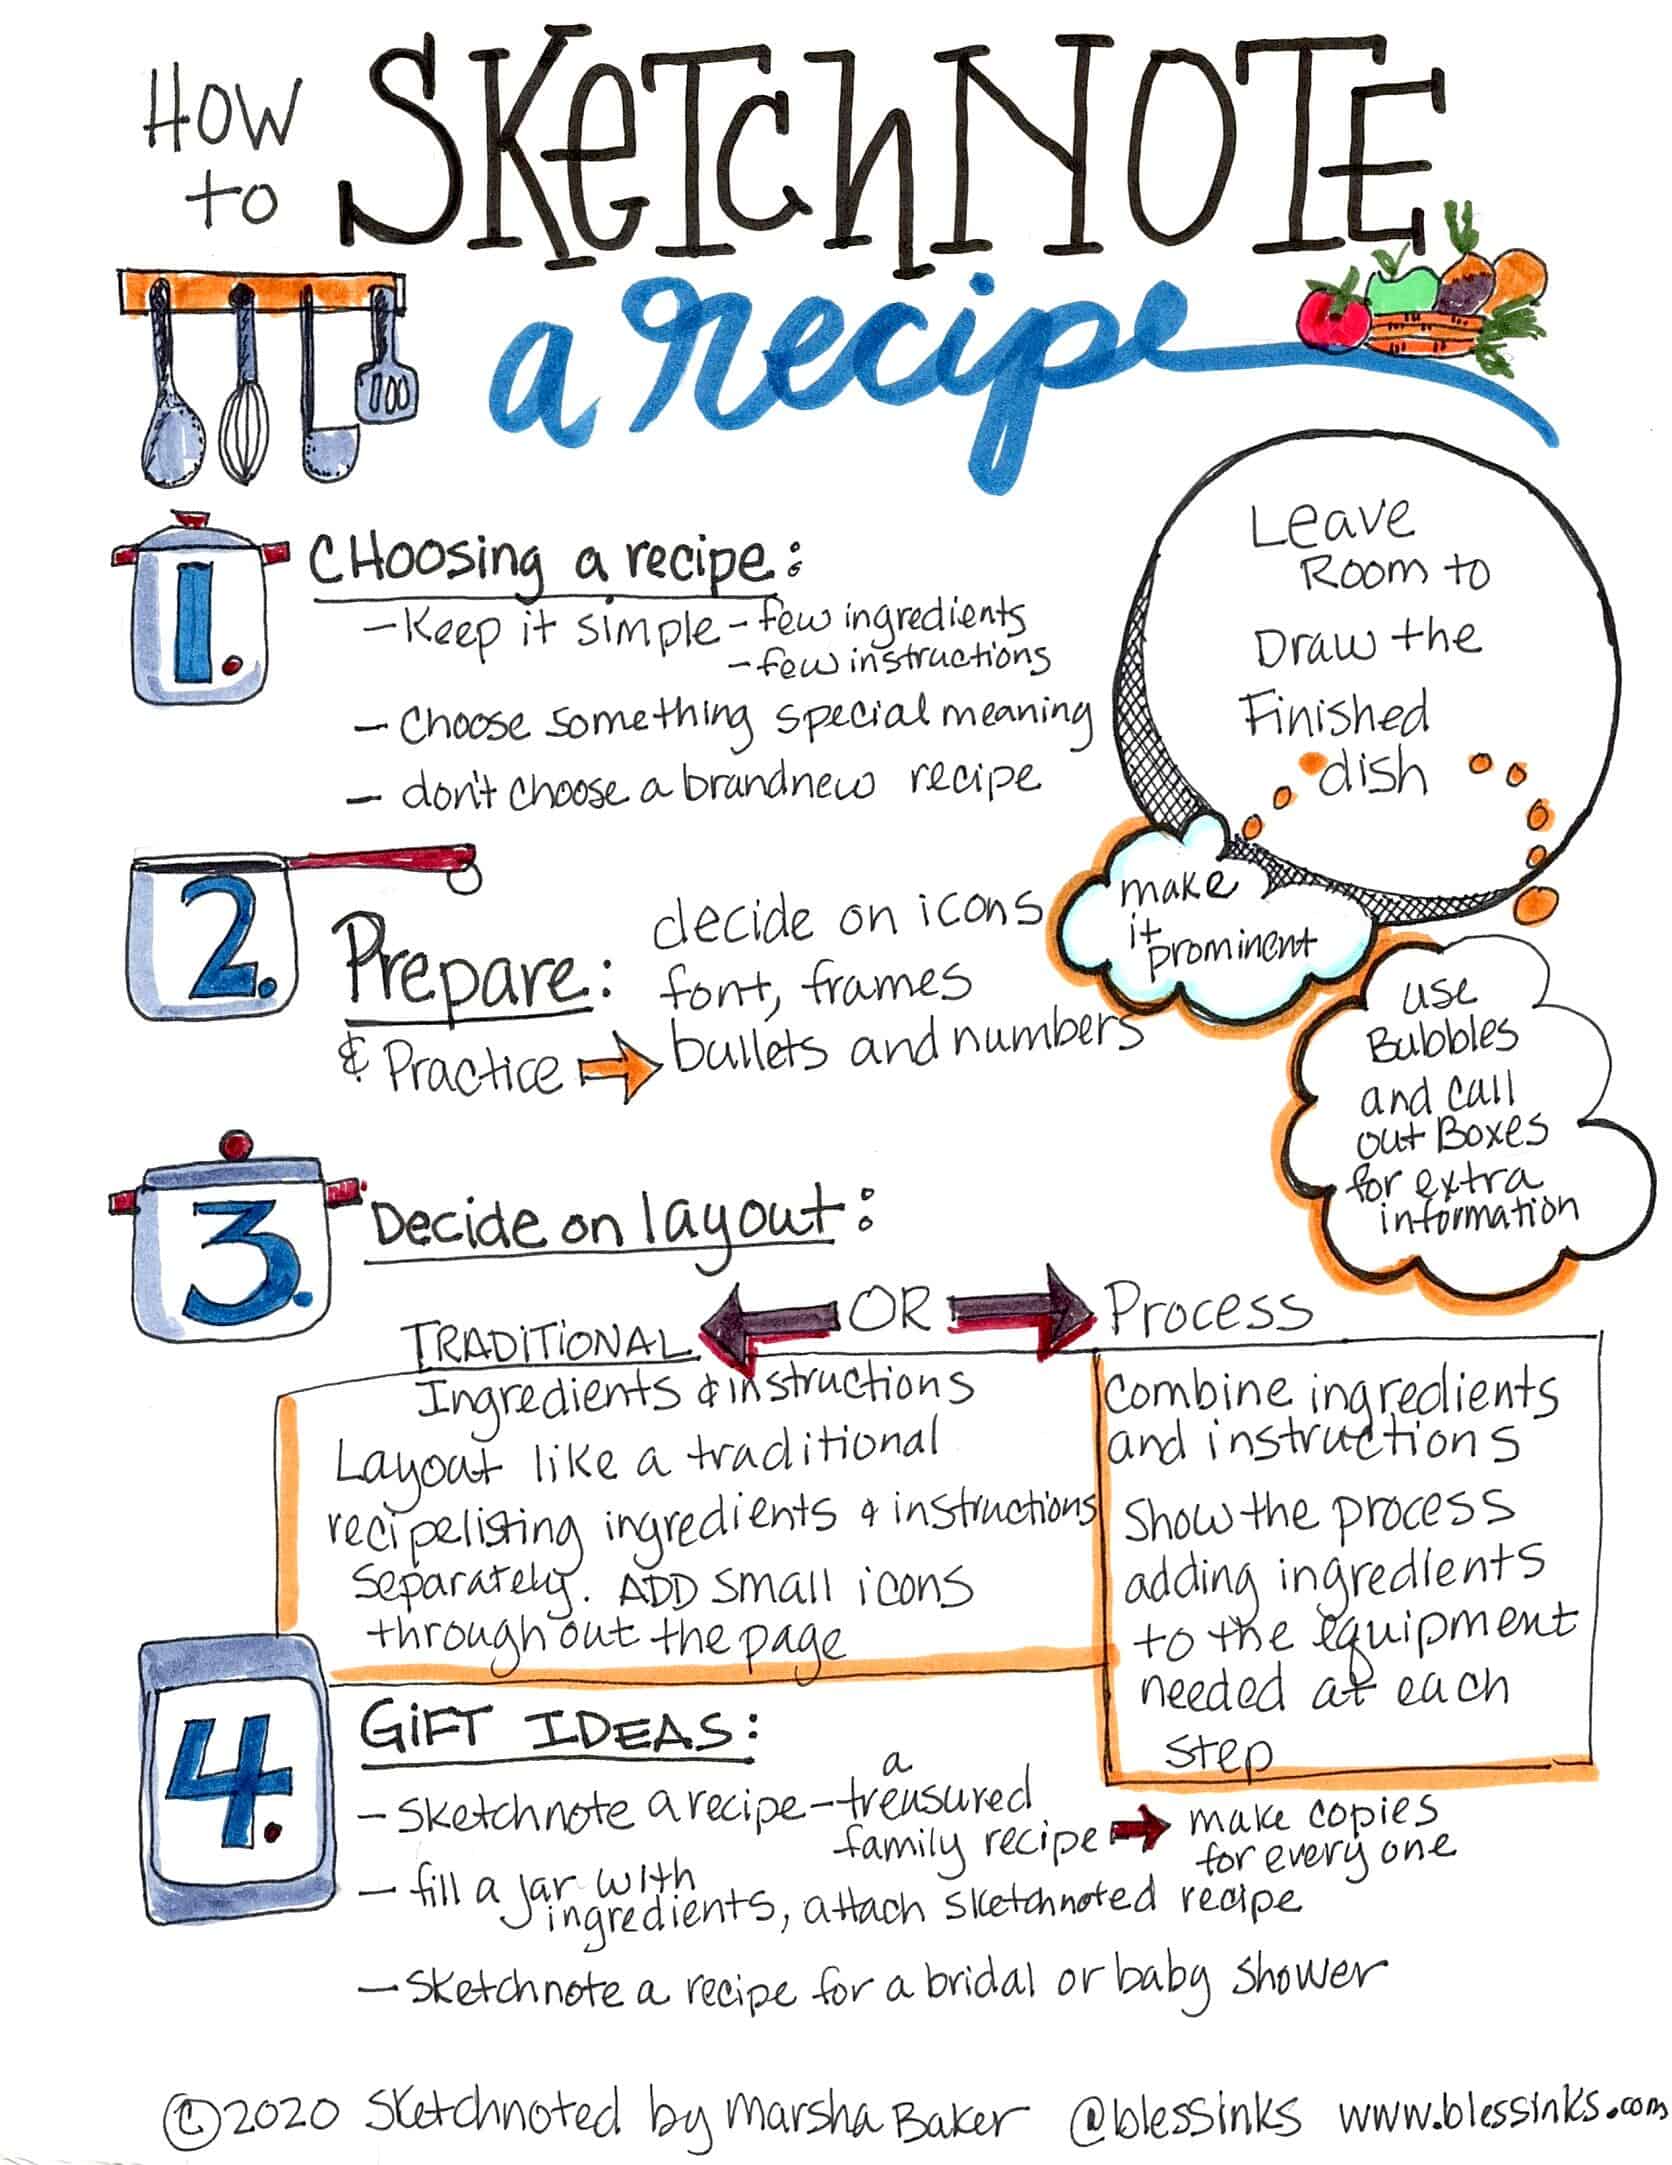 How to Sketchnote a Recipe